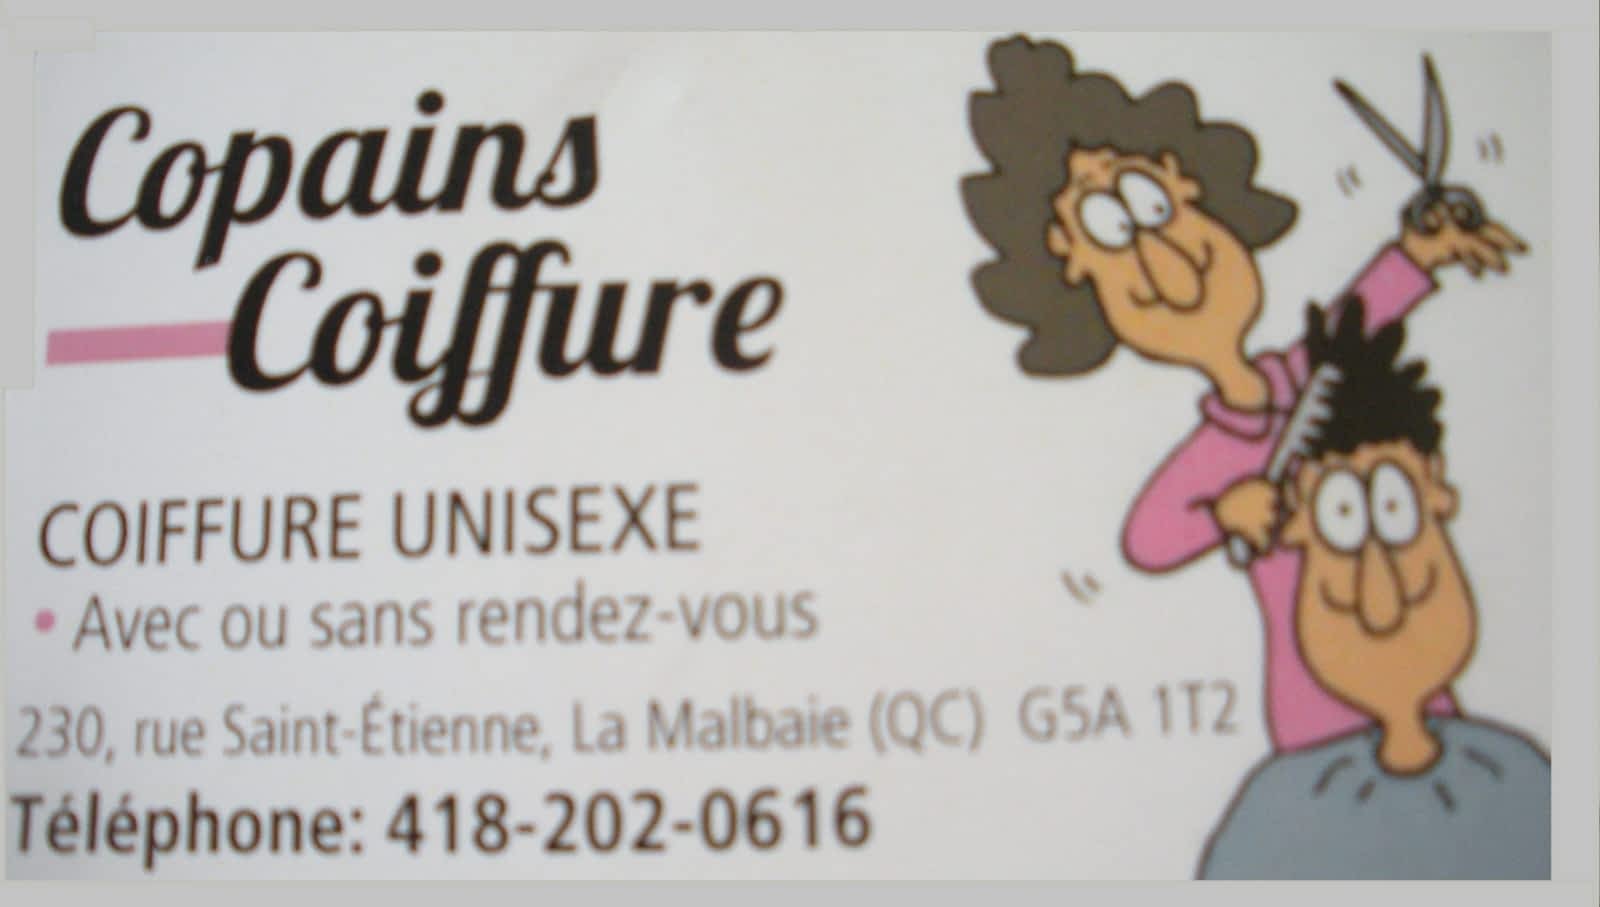 Copains Coiffure 230 Rue St Étienne, La Malbaie Quebec G5A 1T2